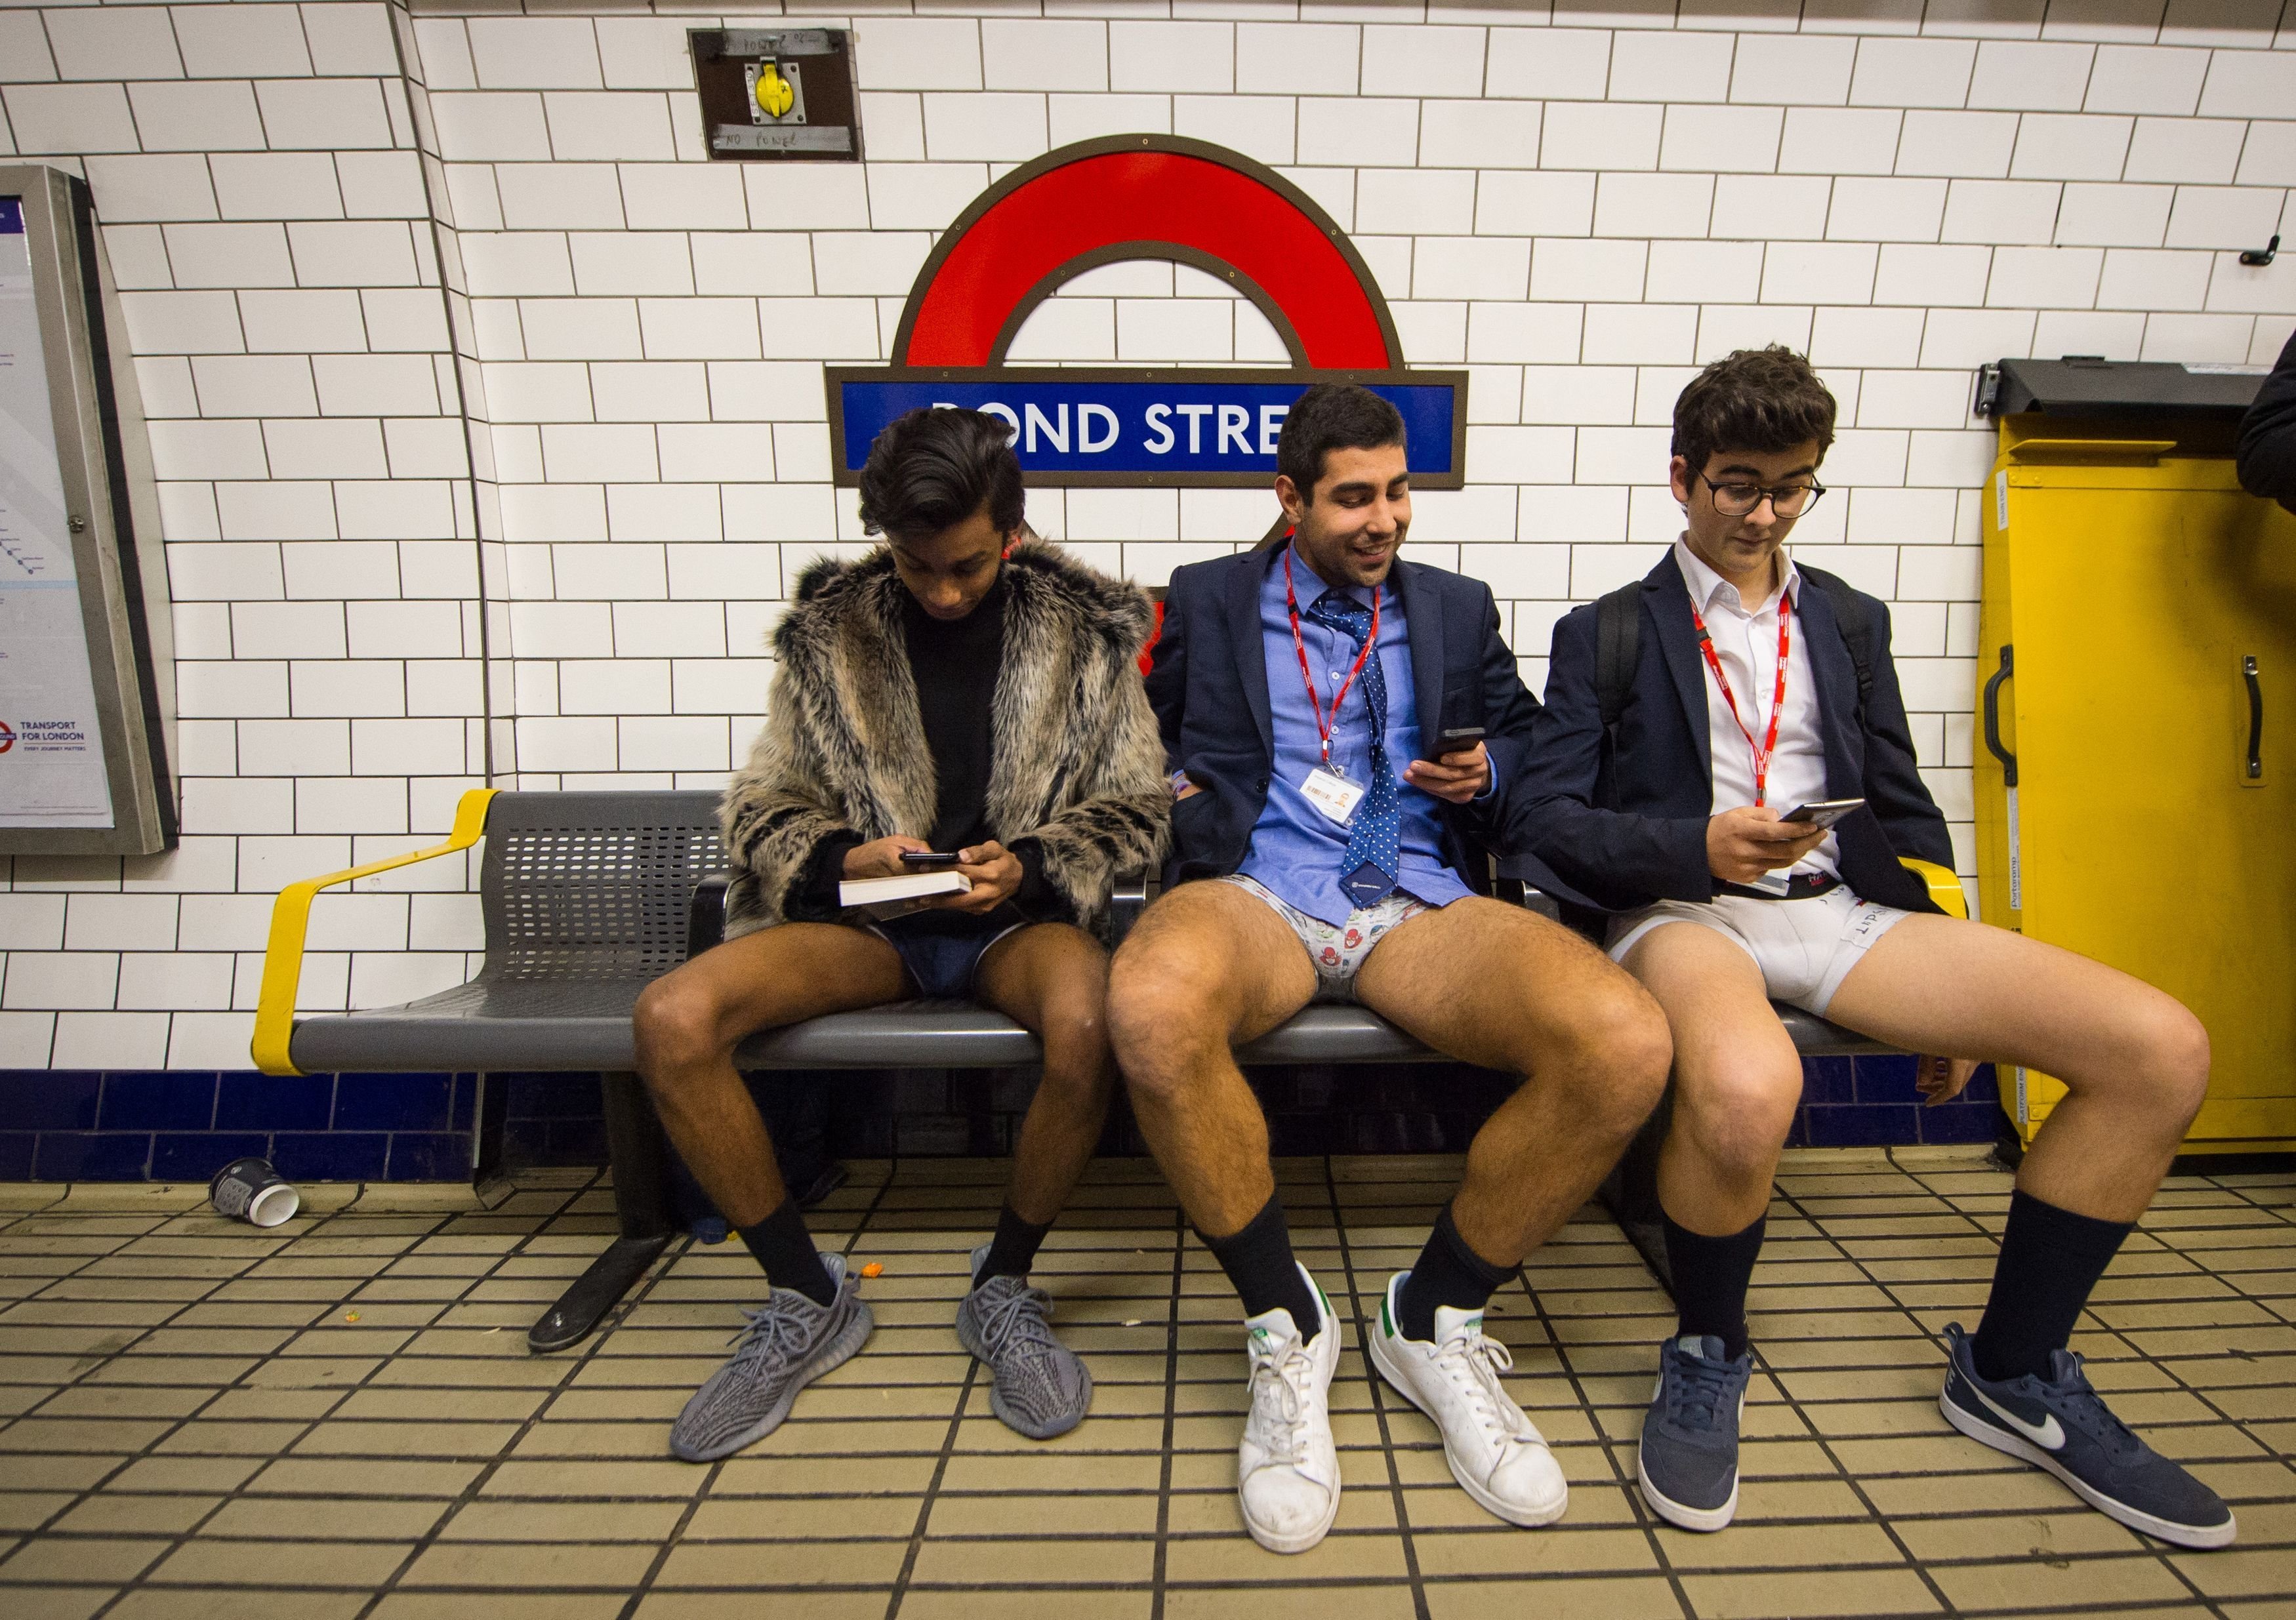 OMG:बिना पैंट के ही ट्रेन में चढ़ गए लड़के-लड़कियां, खिंचवाने लगे पोज मारकर  फोटो, जानिए क्यों किया ऐसा? - no trousers tube ride 2023 hundreds of girls  boys strip off their pants